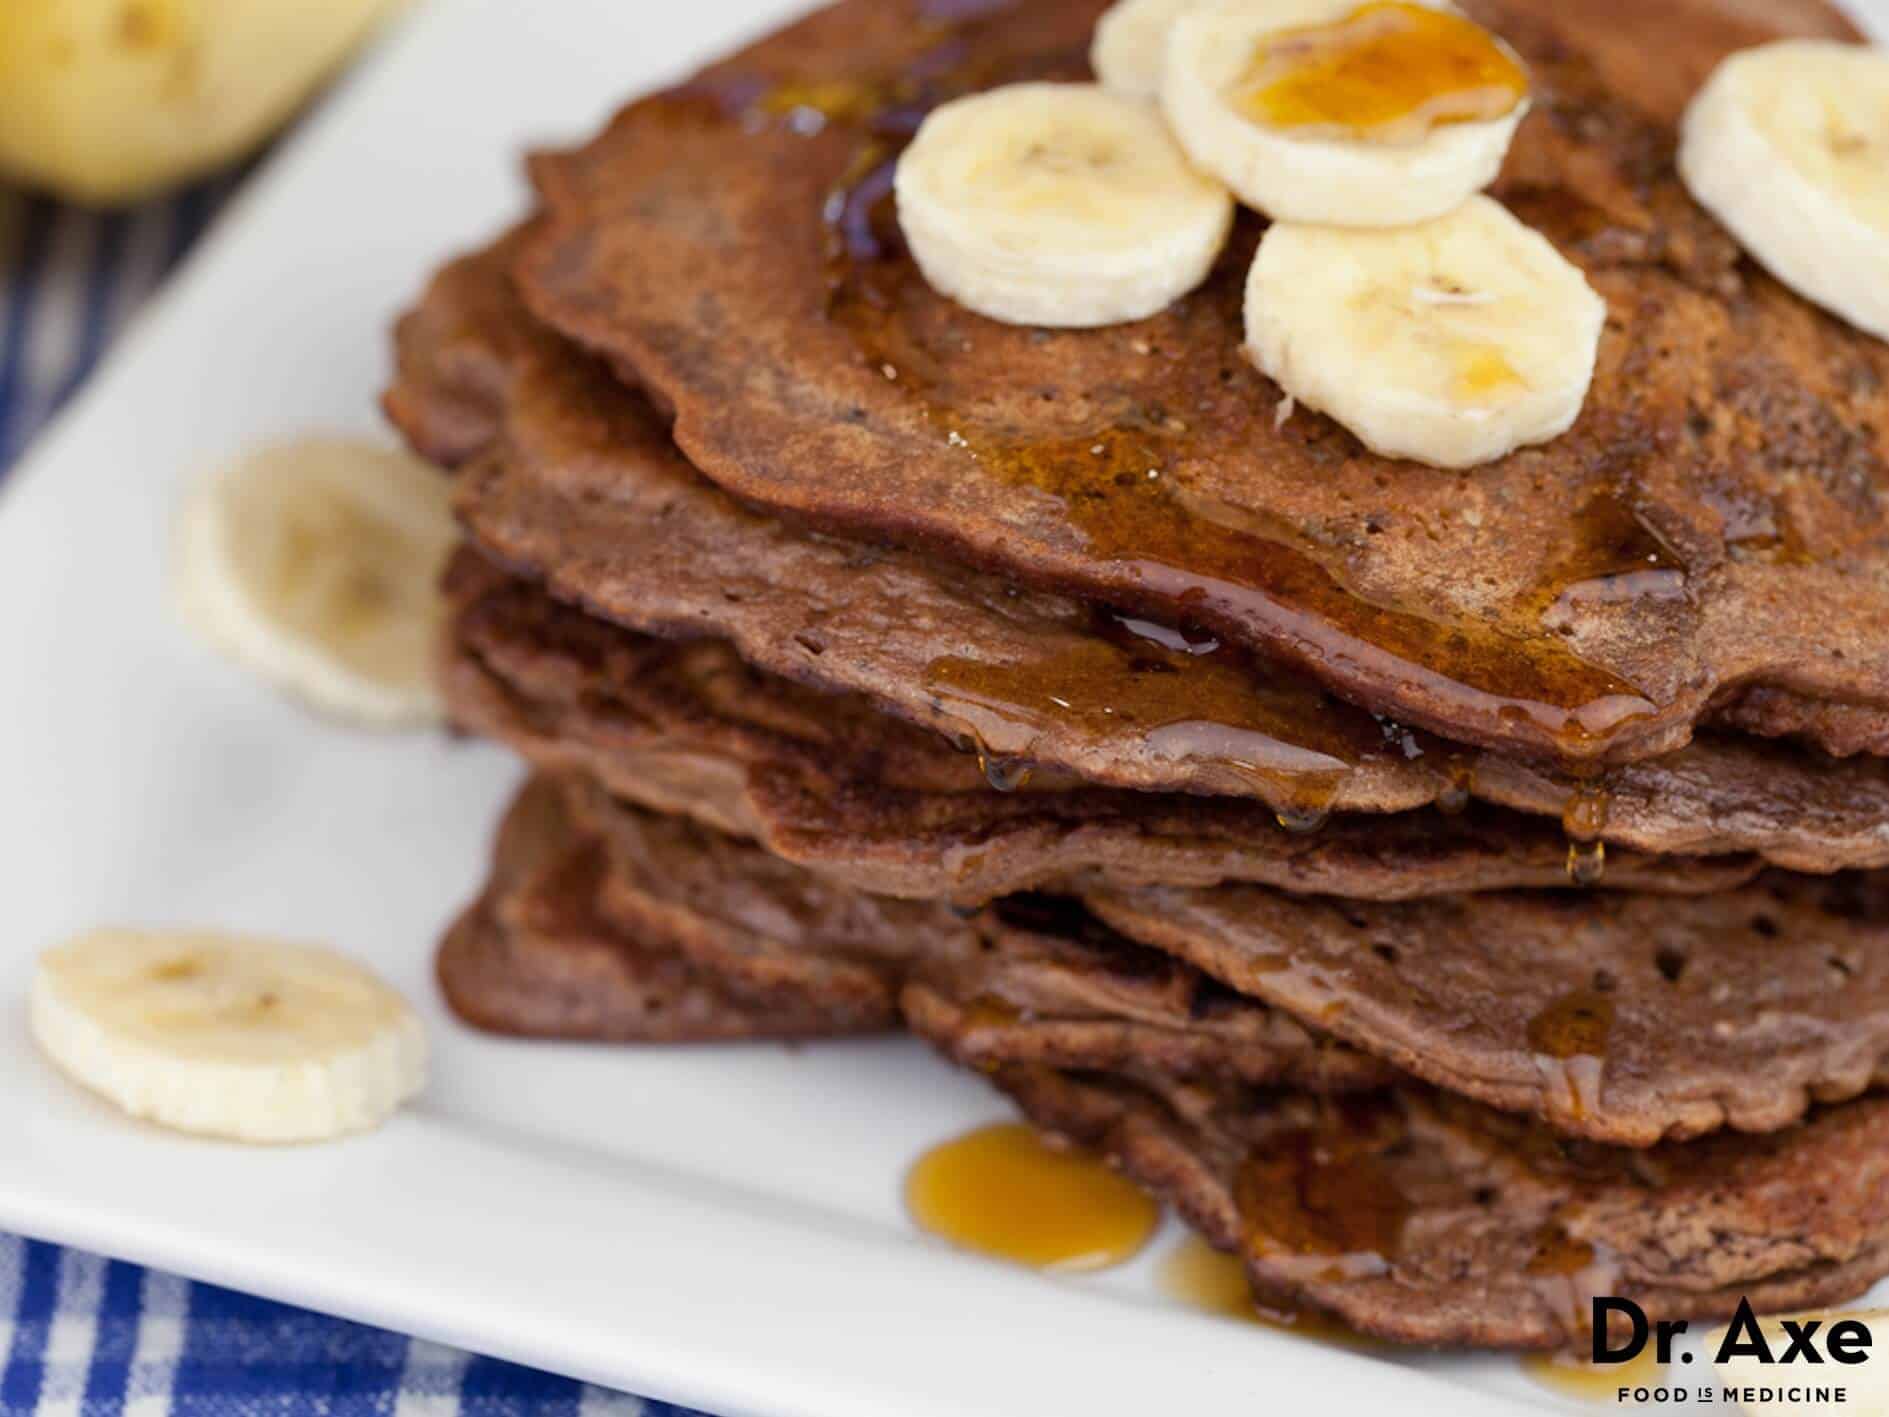 Chocolate banana protein pancakes recipe - Dr. Axe